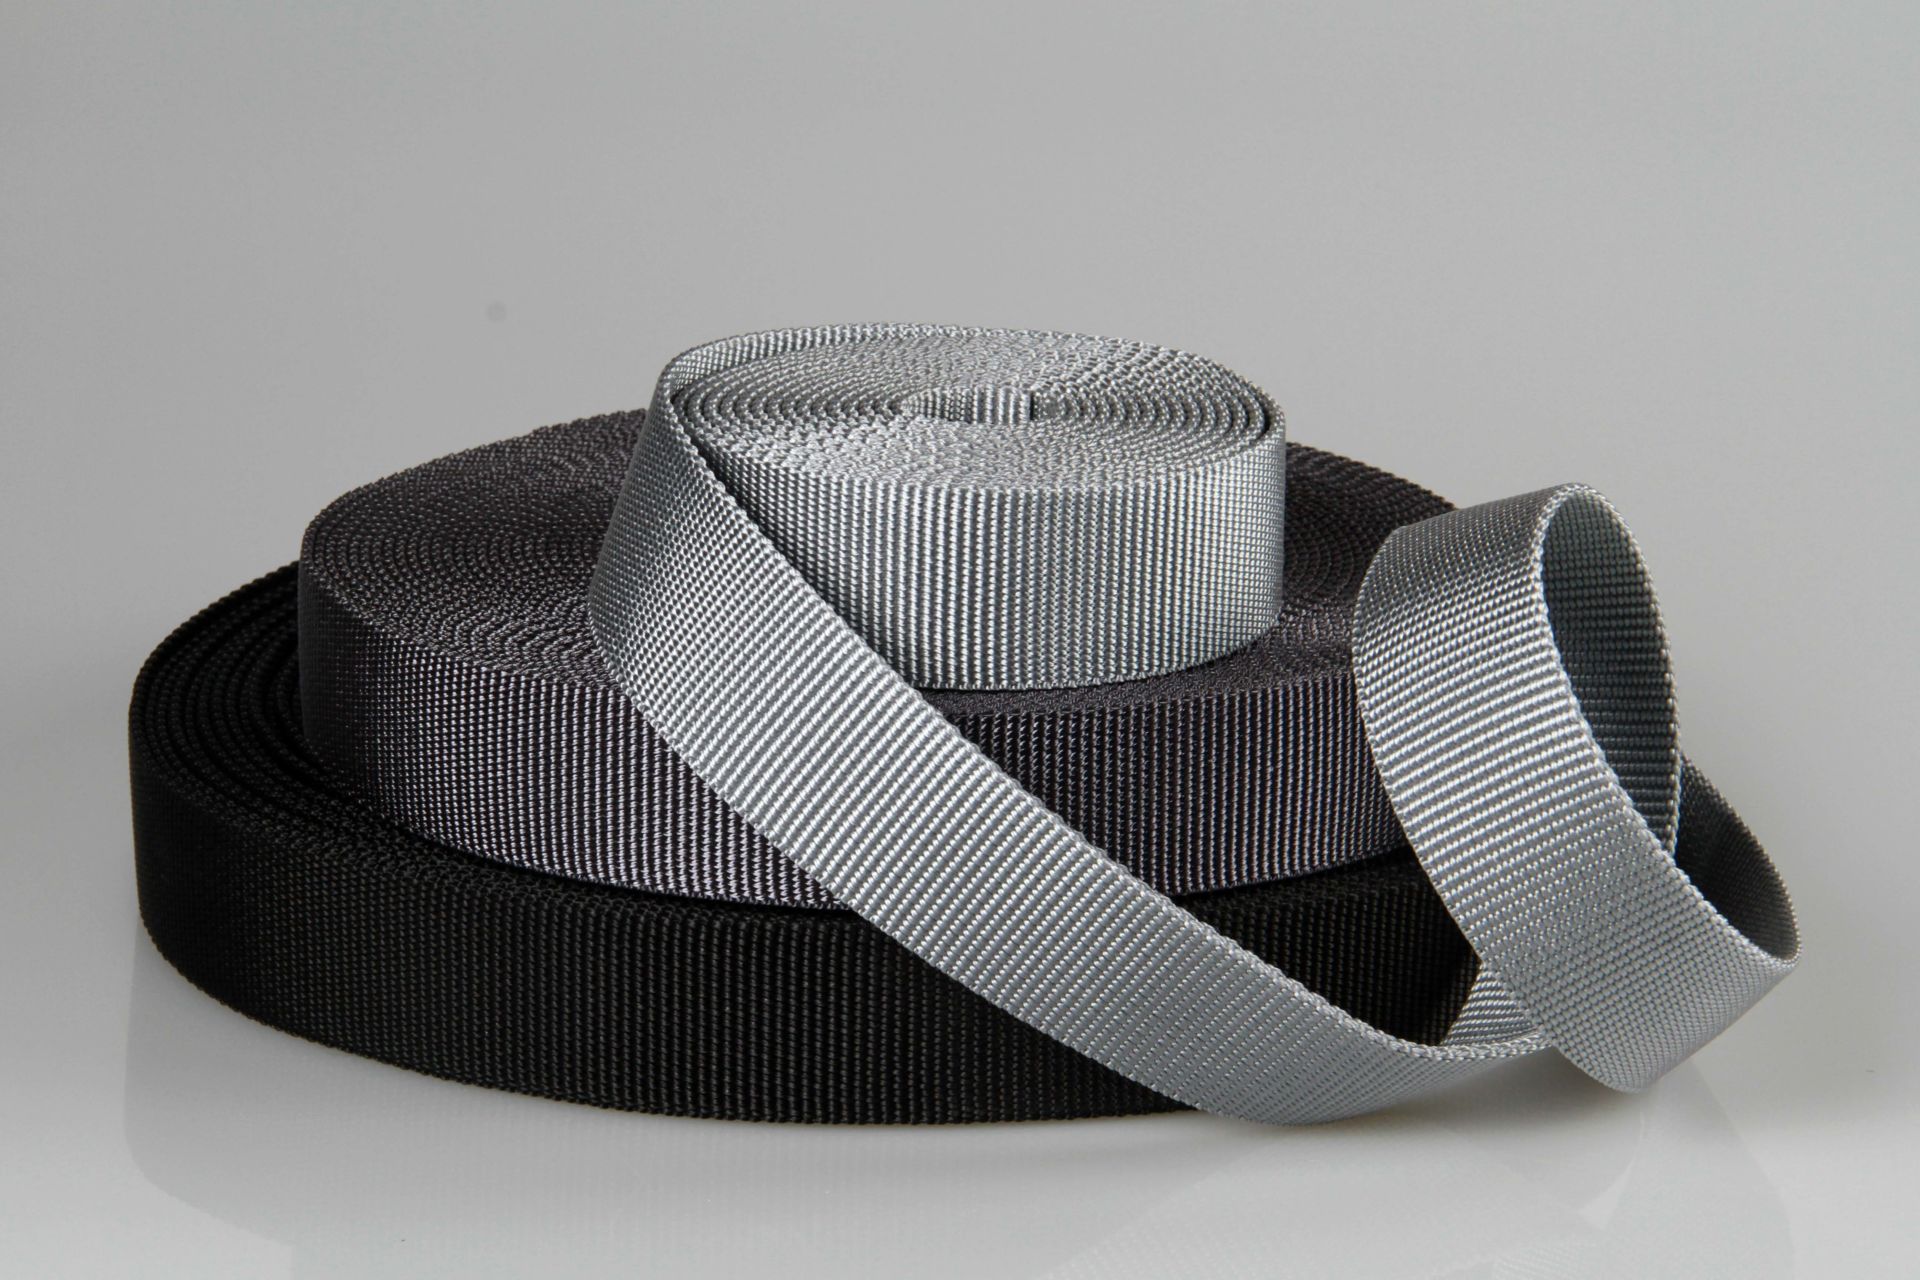 Gurtware aus PP | Taschengurte und Gürtel | 40 mm Breite | Meterware | Robust und strapazierfähig | 2,5 mm Stärke